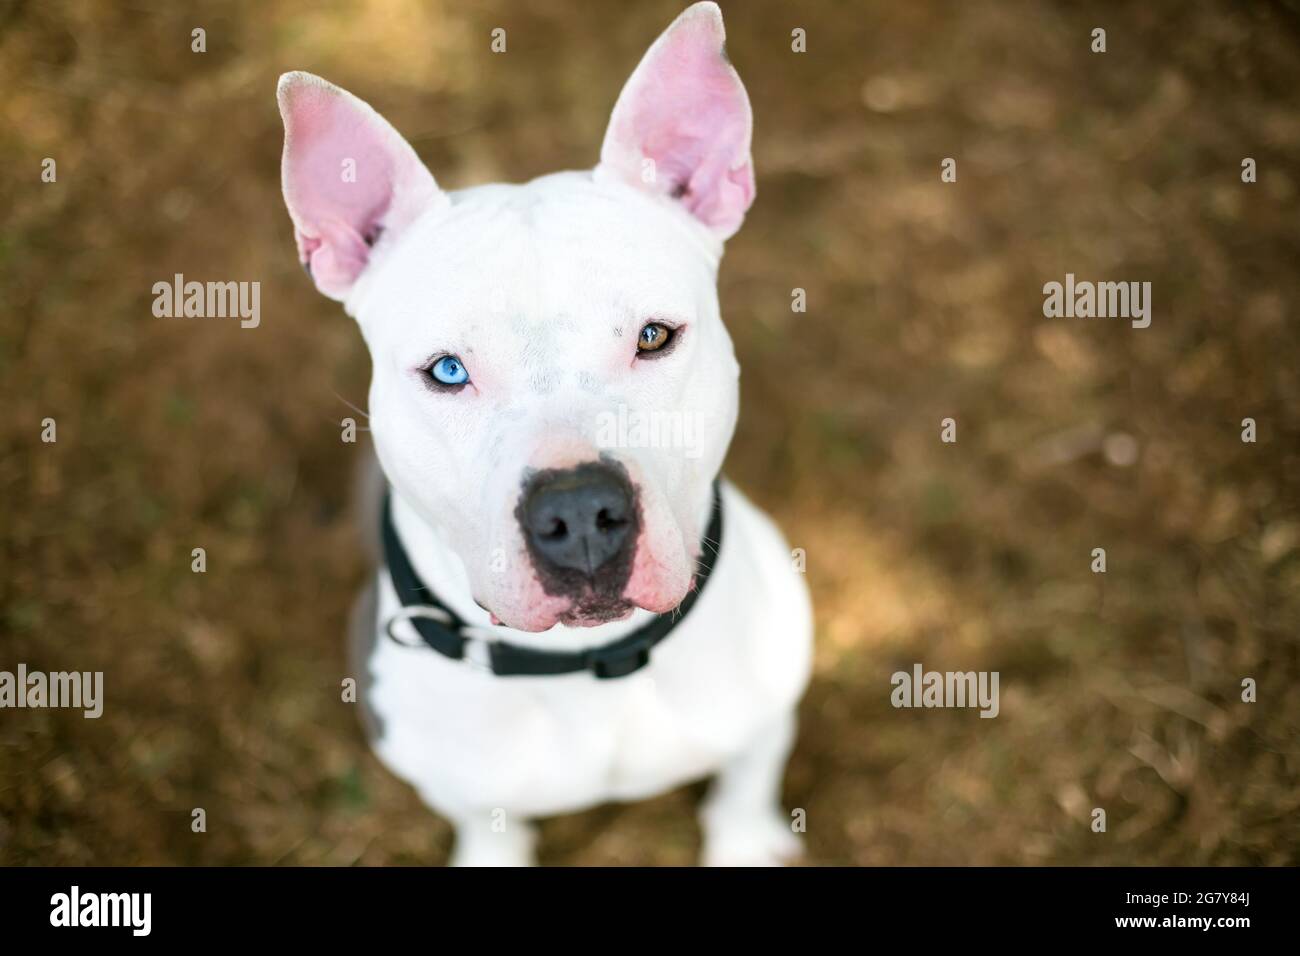 Un Pit Bull Terrier bianco razza mista cane con eterocromia nei suoi occhi, un occhio blu e un occhio marrone, guardando verso l'alto la fotocamera Foto Stock